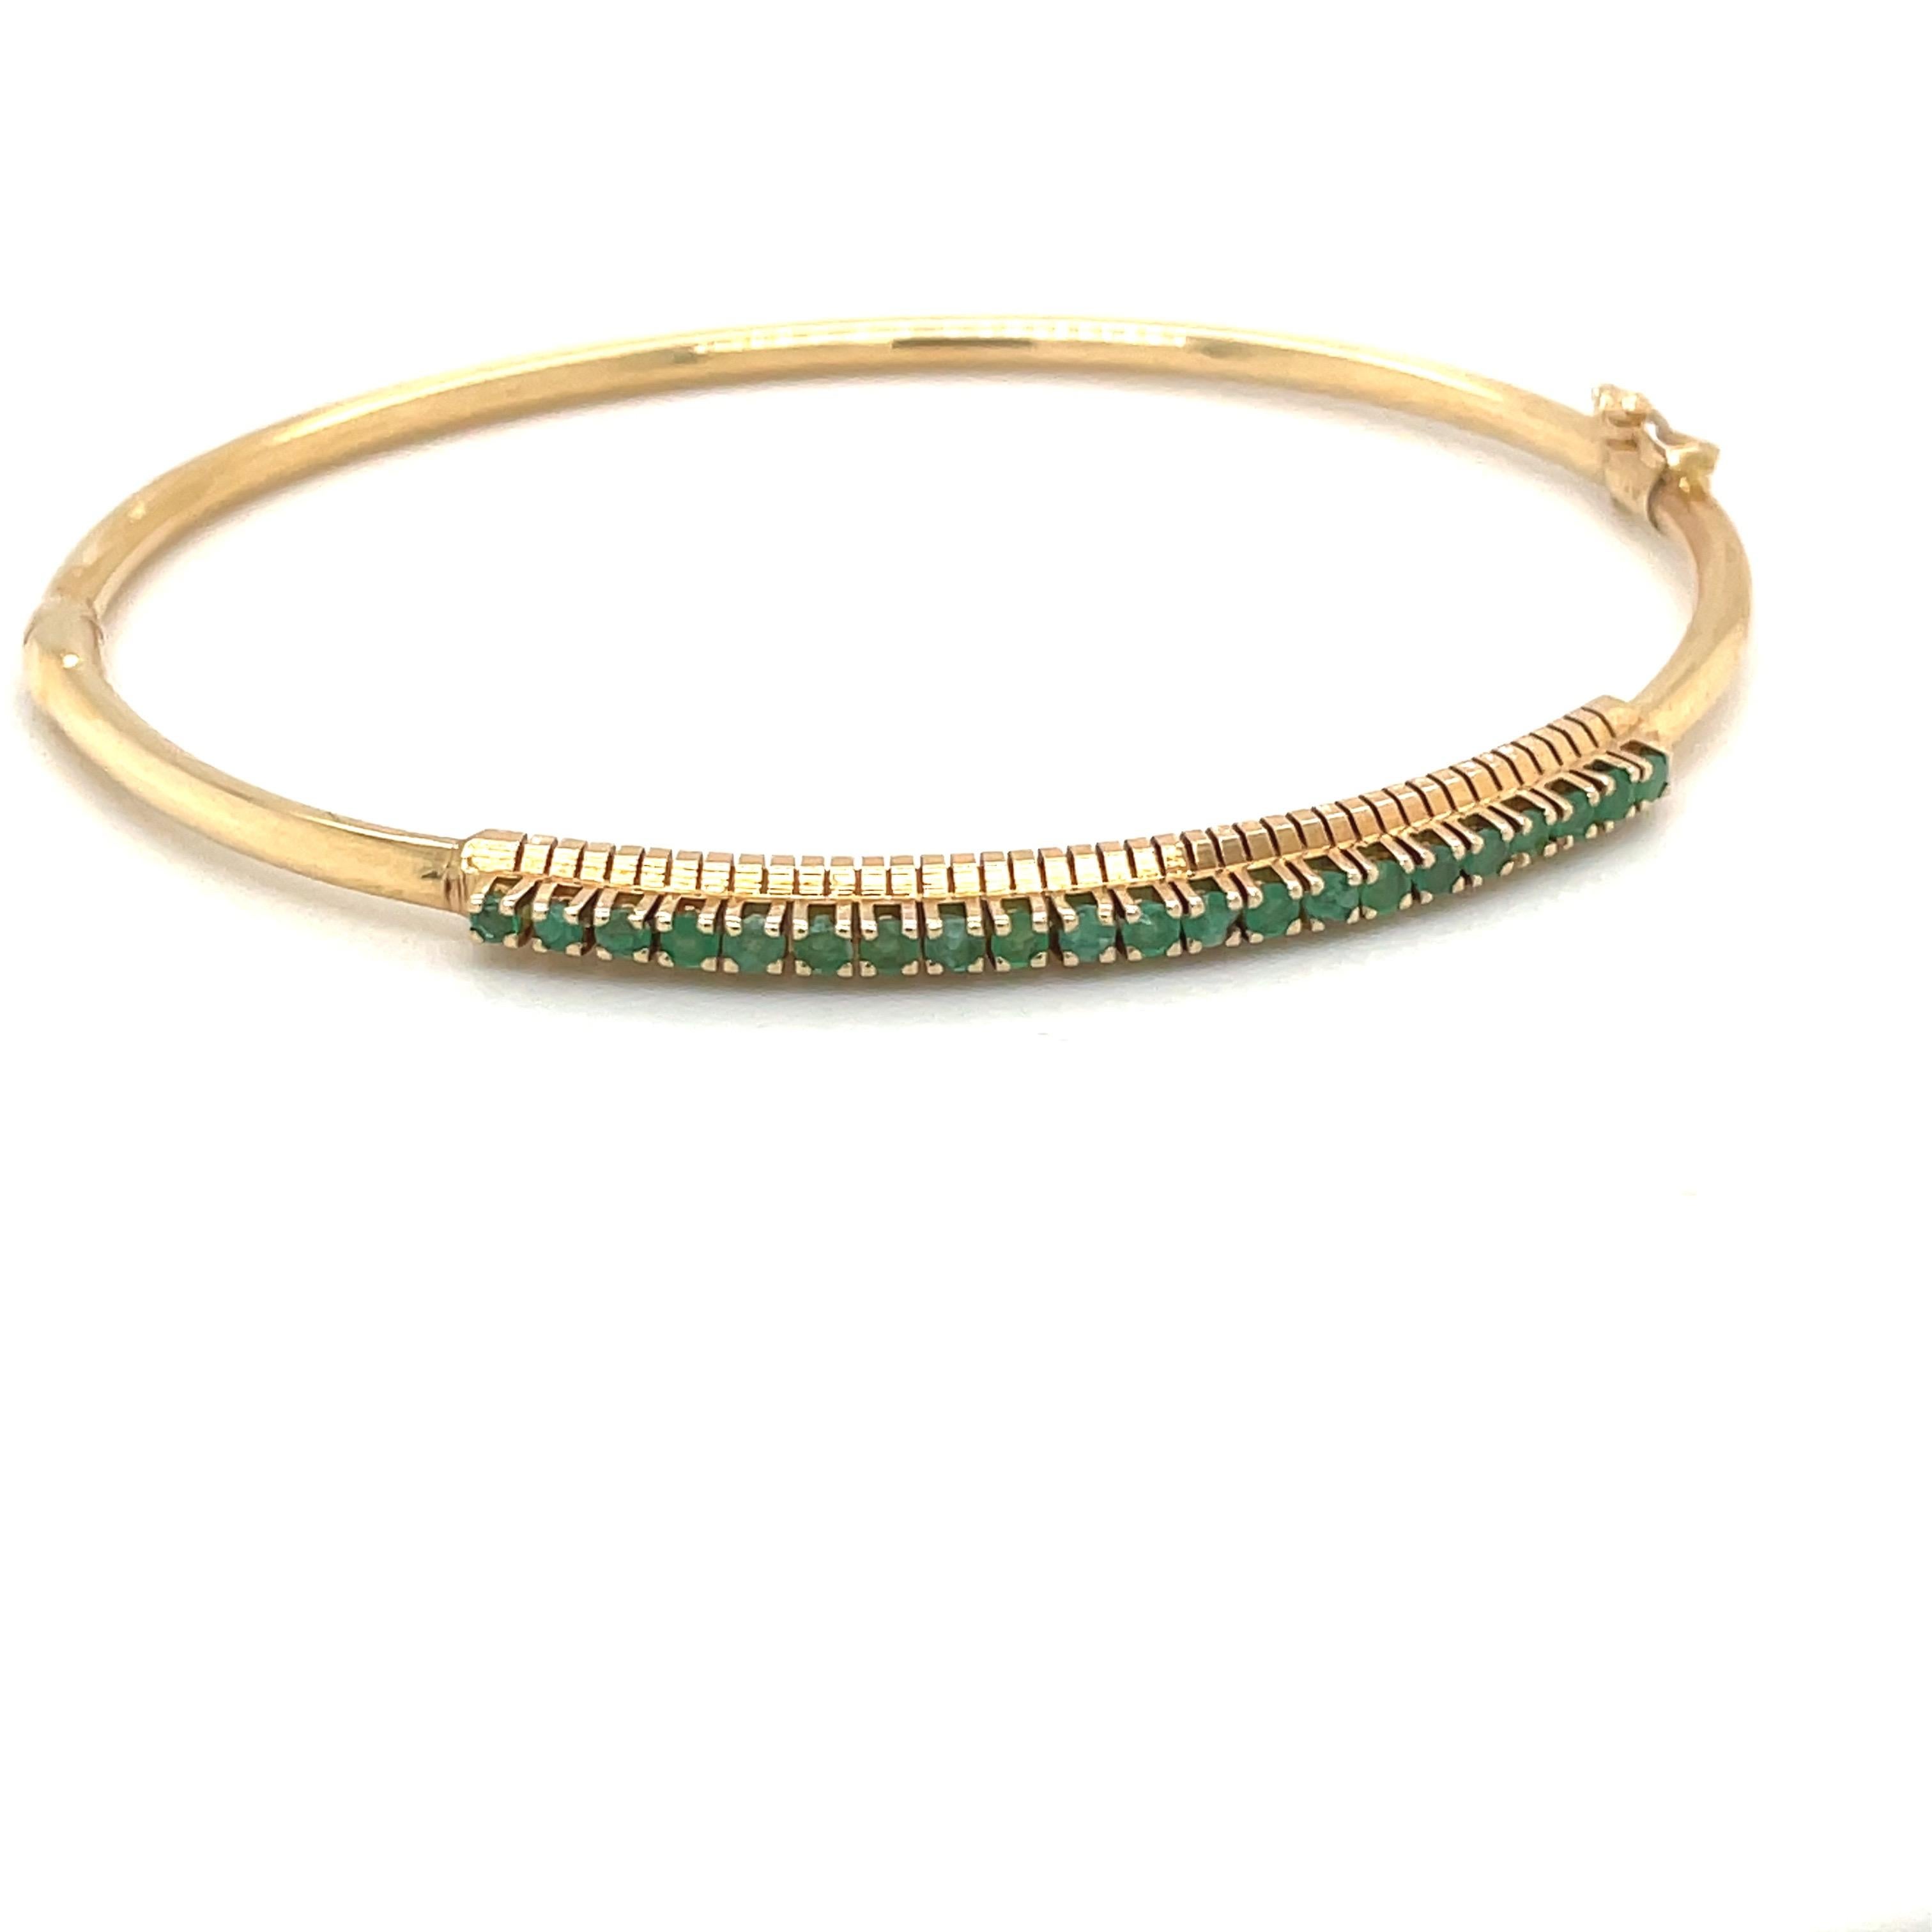 Un bracelet bangle en or jaune 14 carats avec une seule rangée de pierres serties  émeraudes rondes. Le bracelet à charnière mesure 2,5